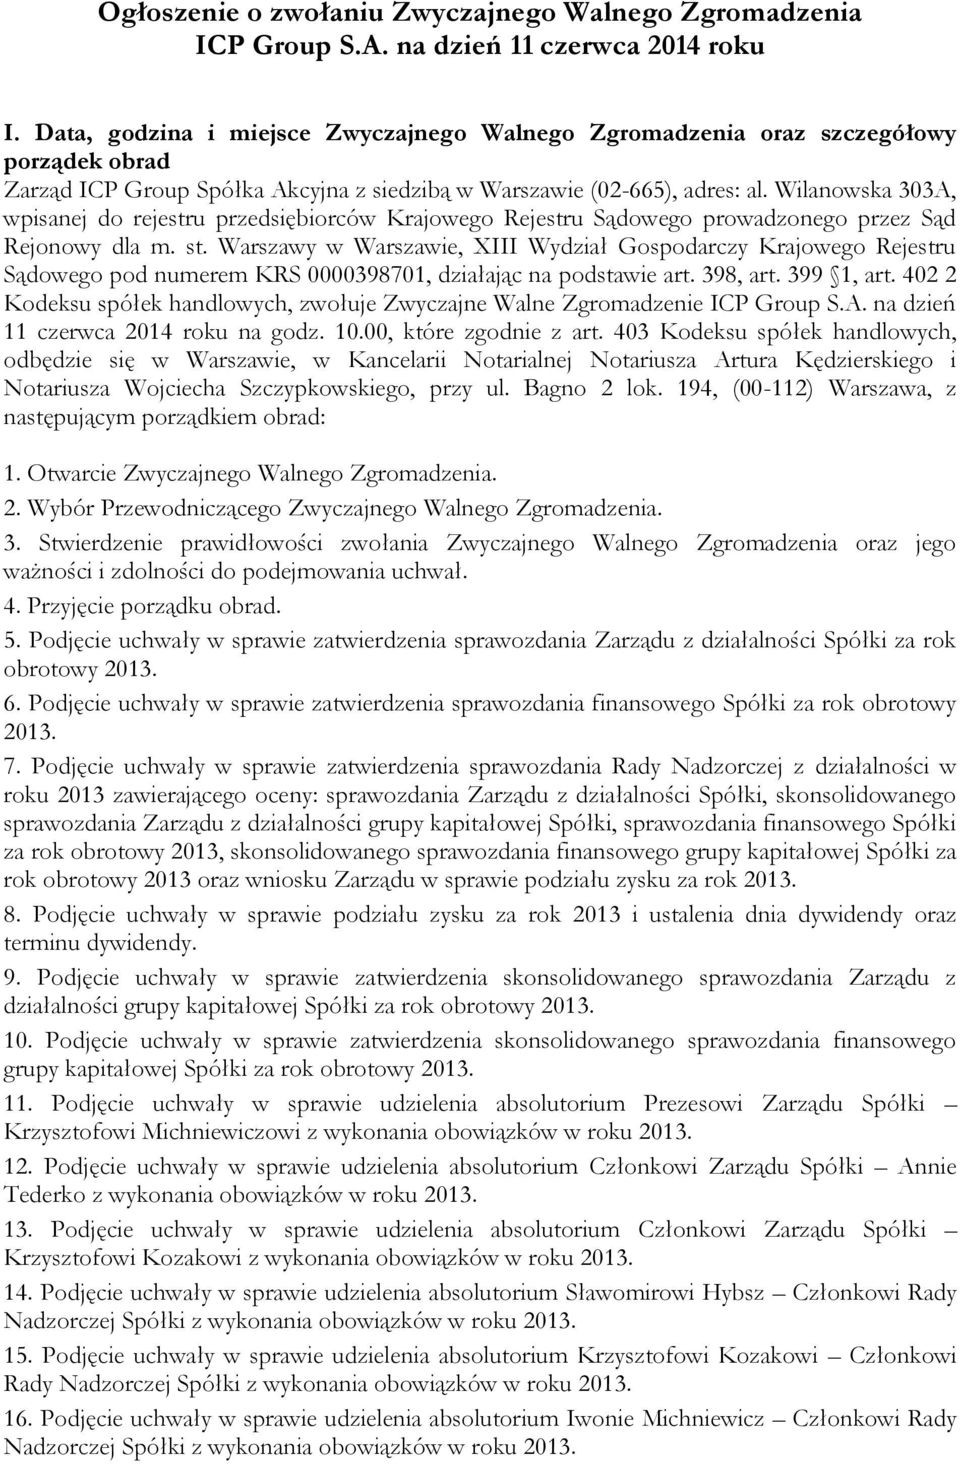 Wilanowska 303A, wpisanej do rejestru przedsiębiorców Krajowego Rejestru Sądowego prowadzonego przez Sąd Rejonowy dla m. st.